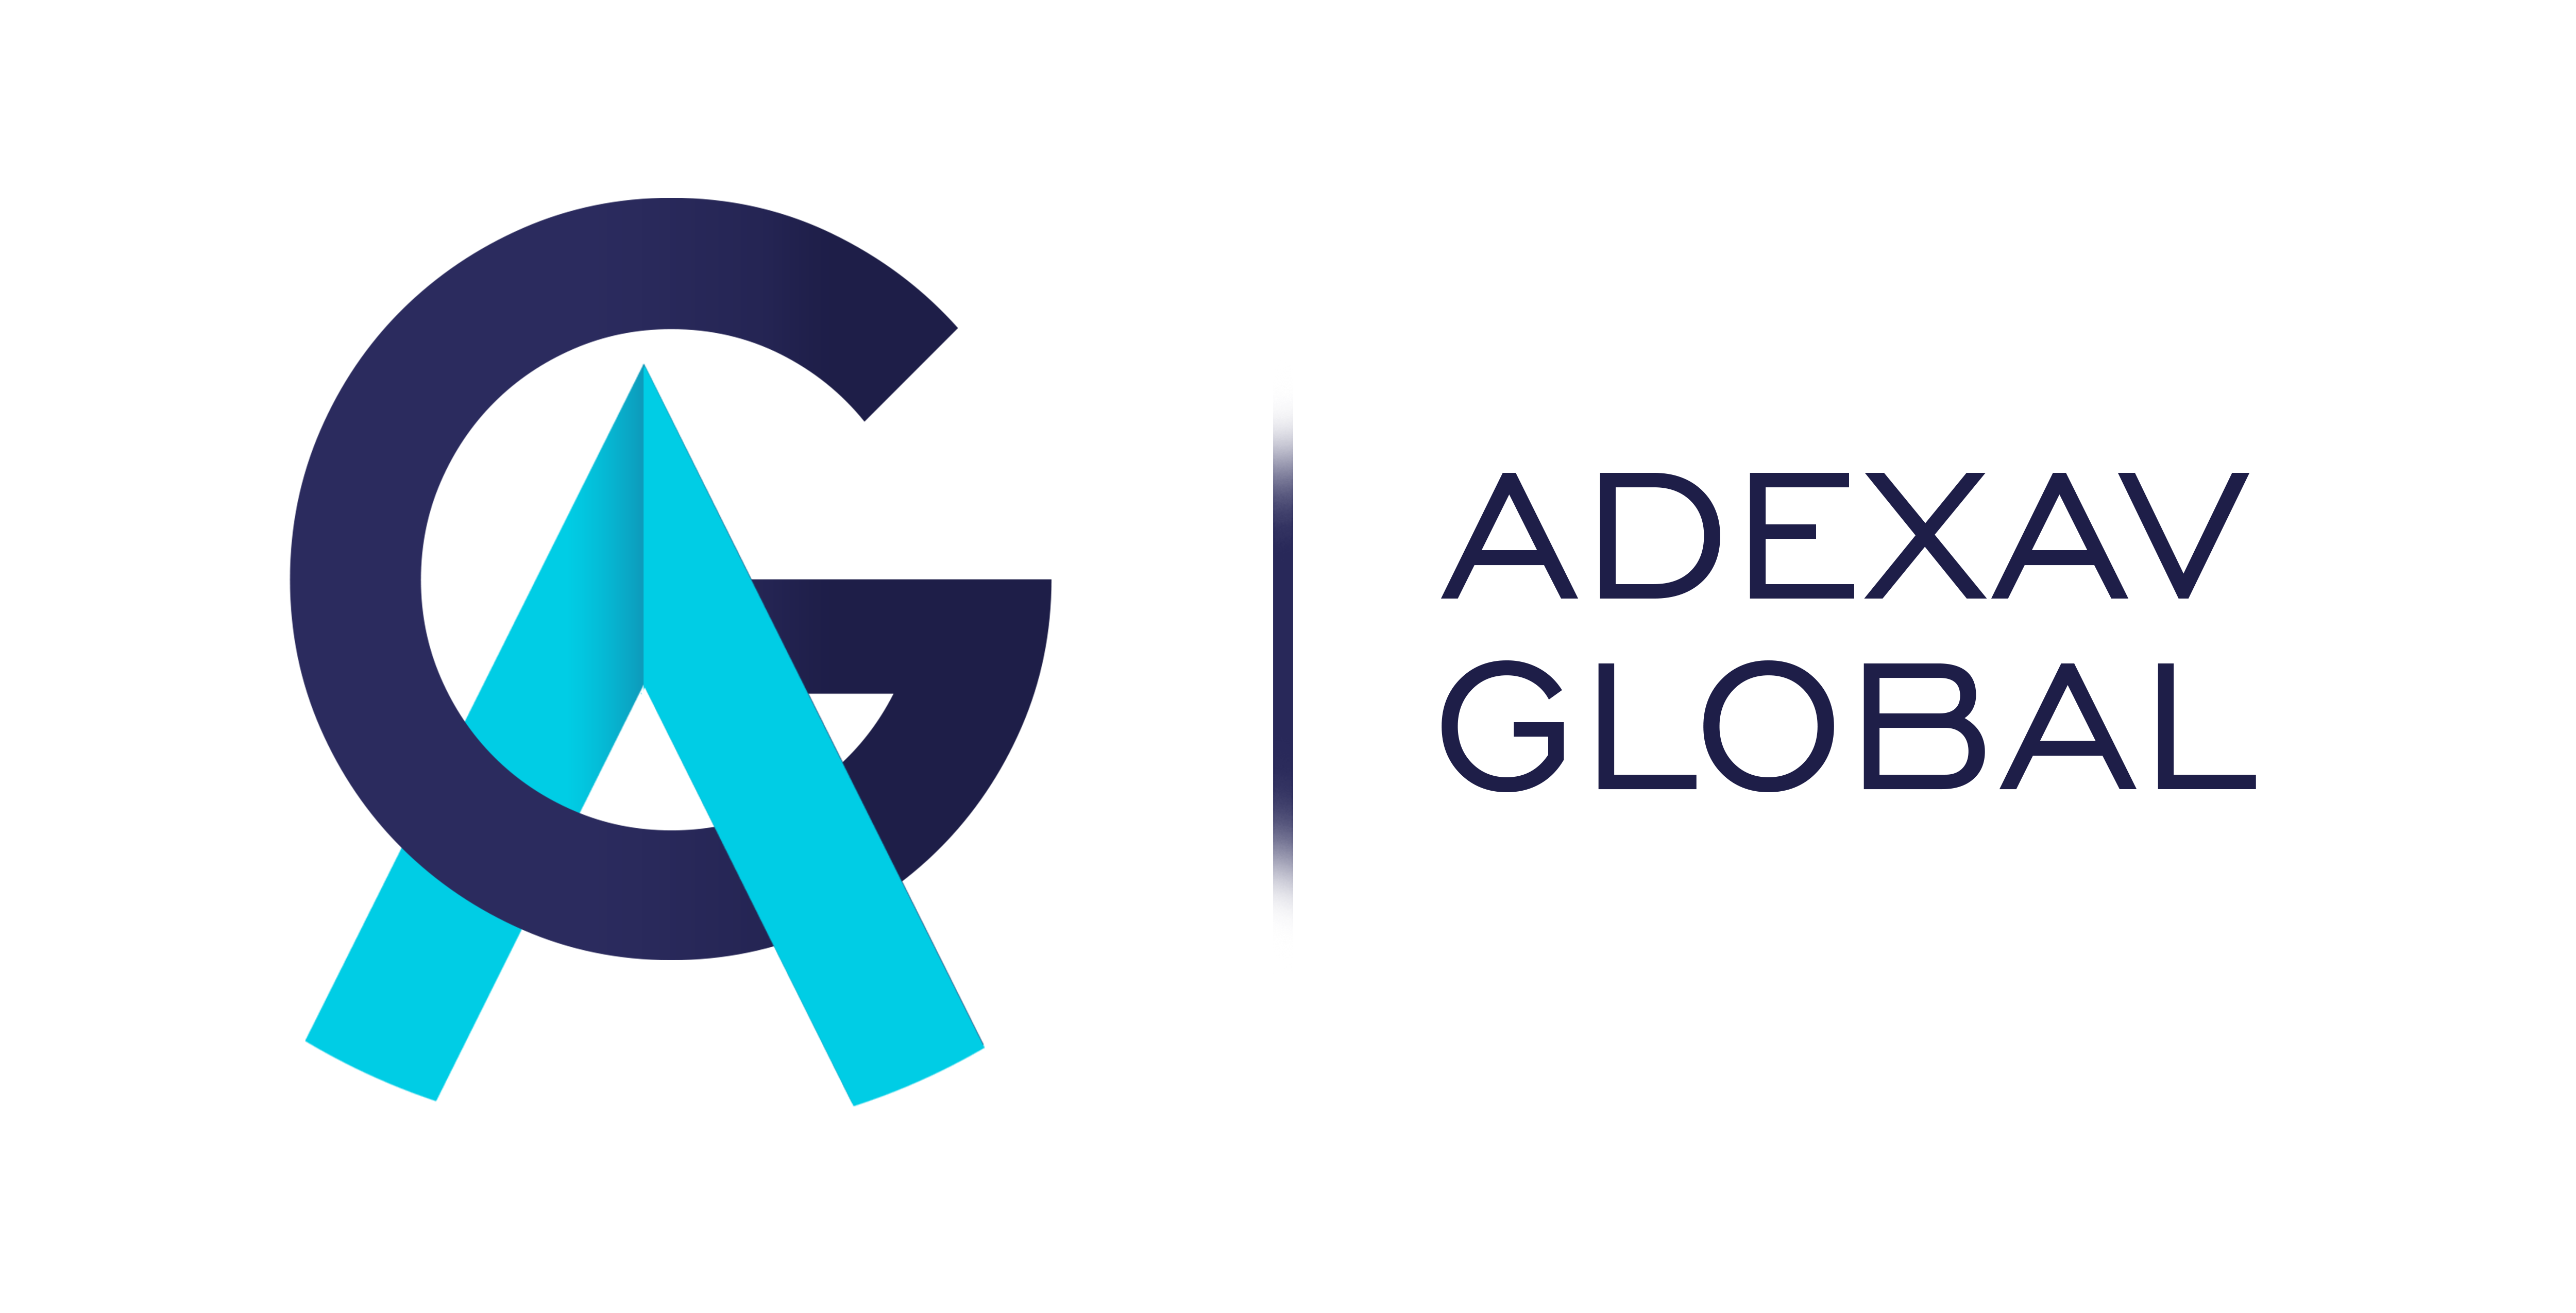 Adexav Global